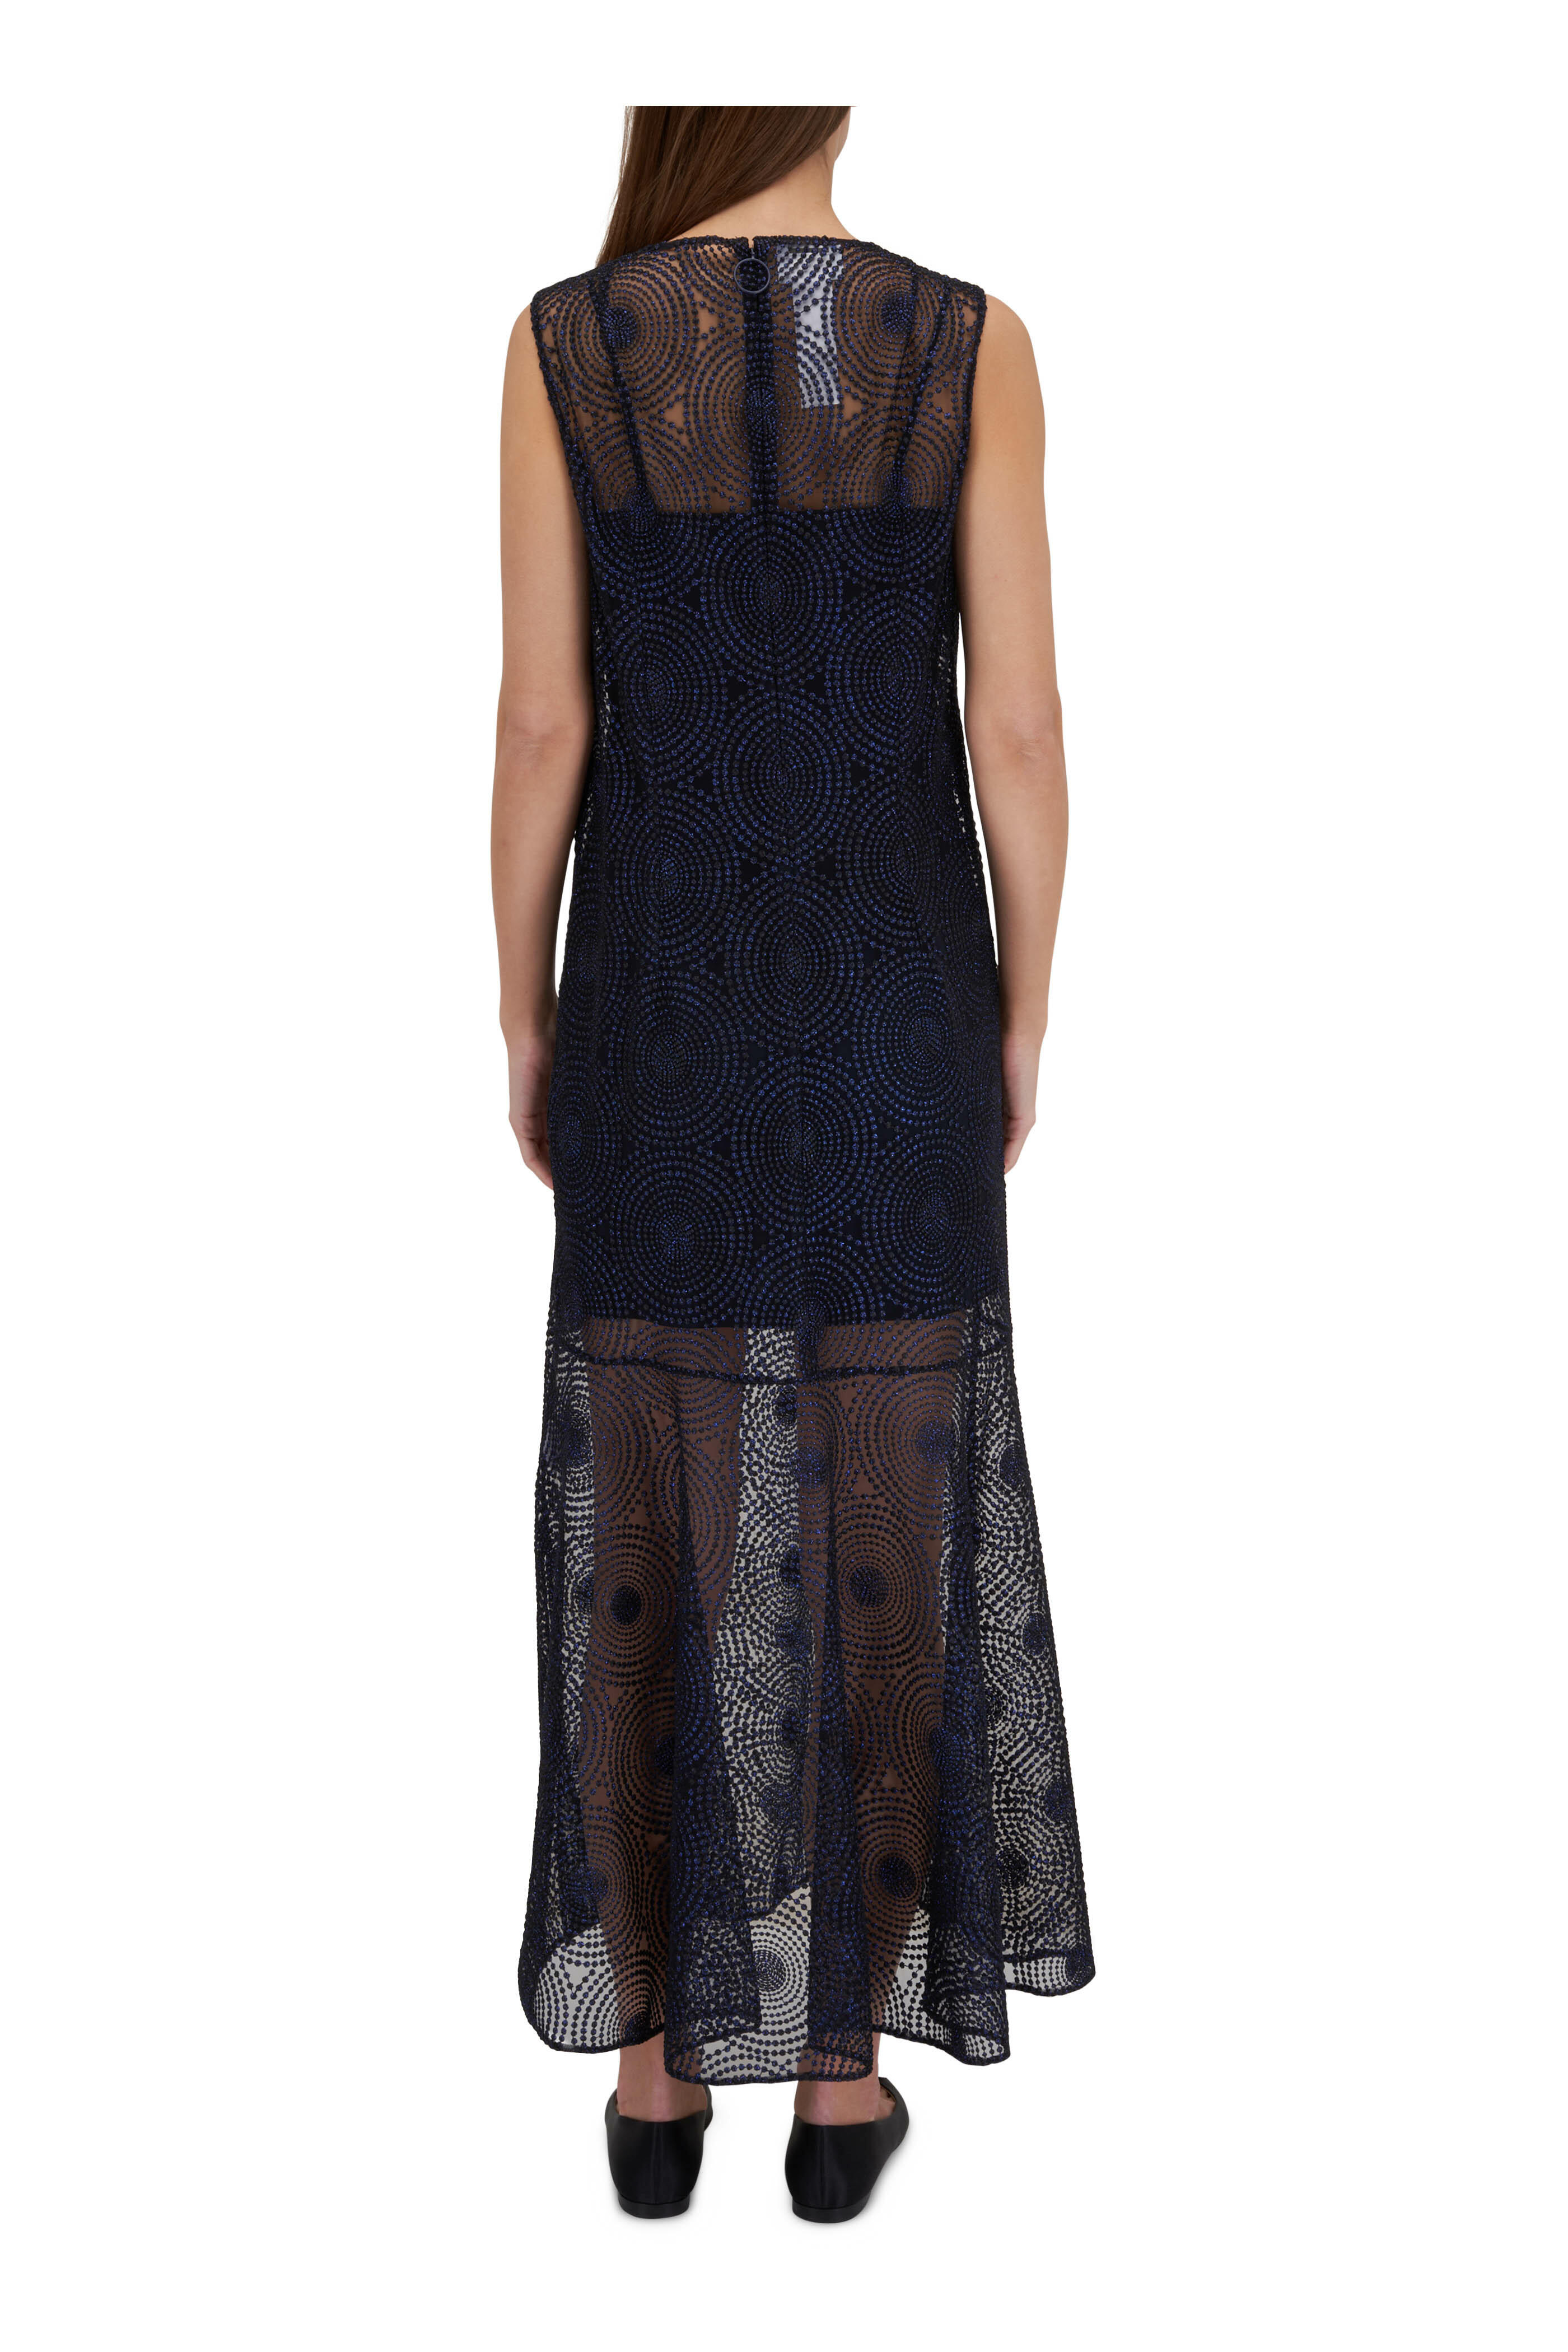 Akris Punto Lace Yoke Jersey Dress ( Size US 6-F 38-D36- IT42 )